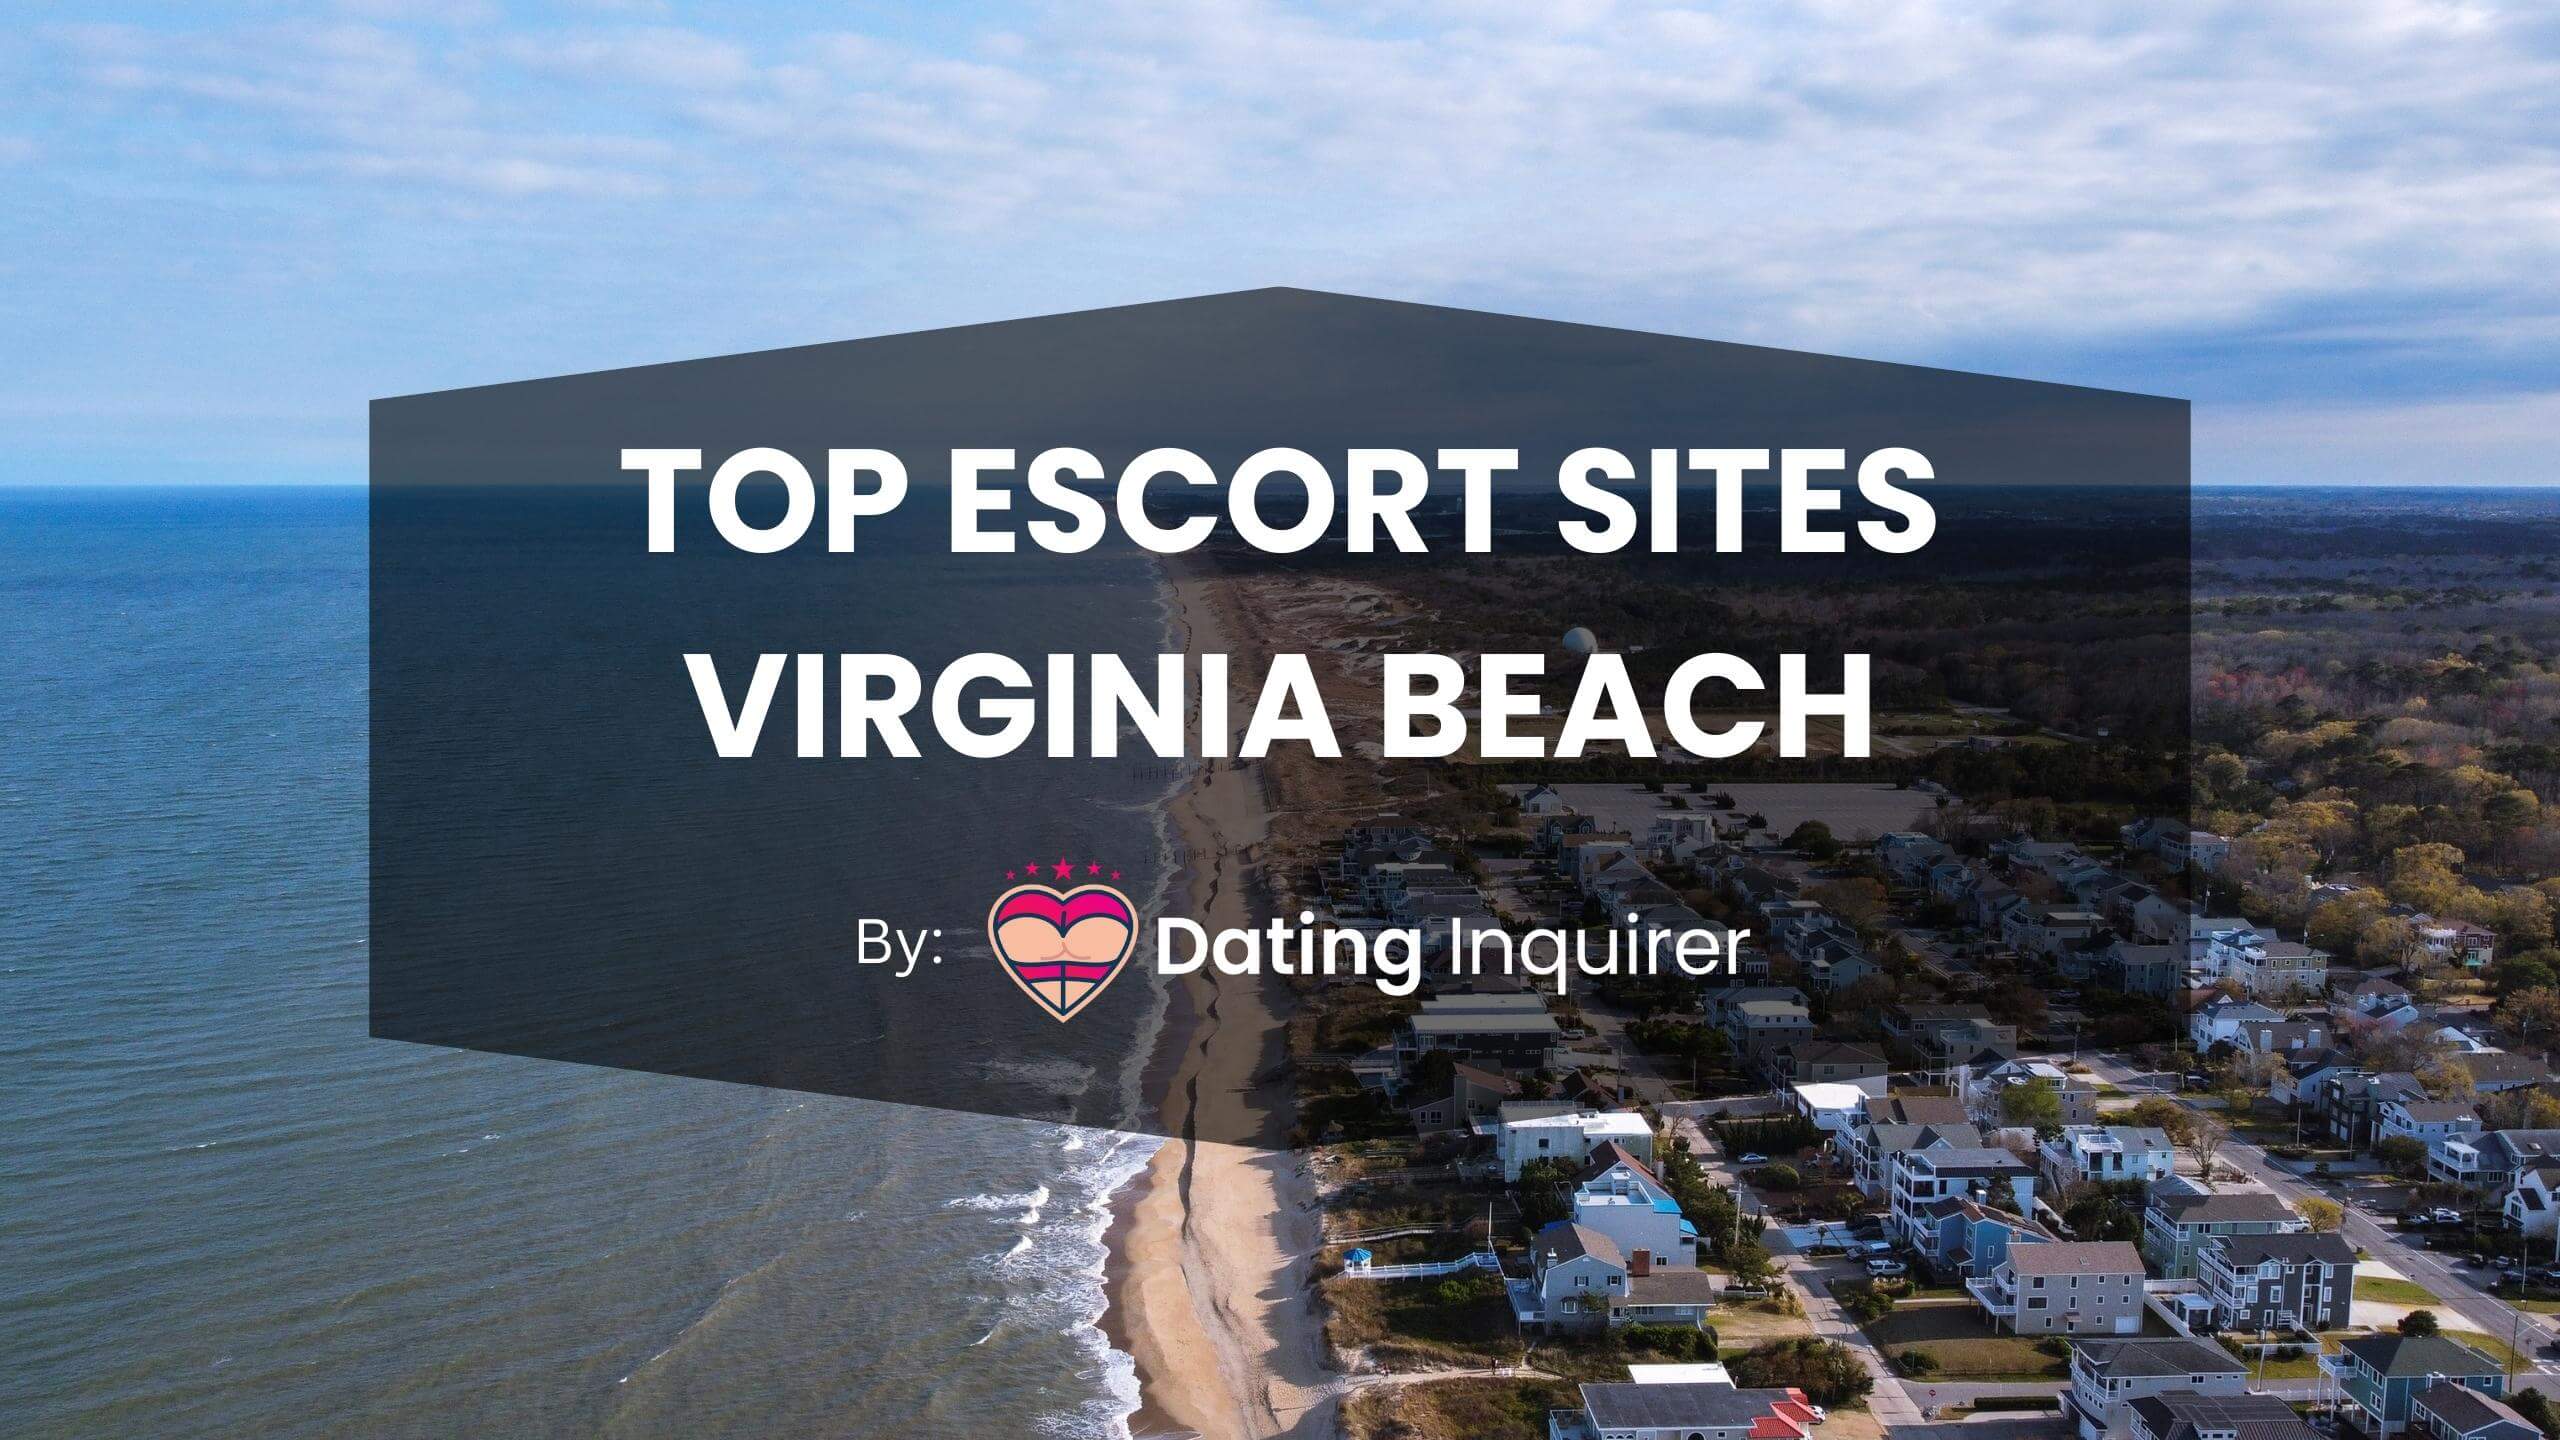 top escort sites virginia beach cover